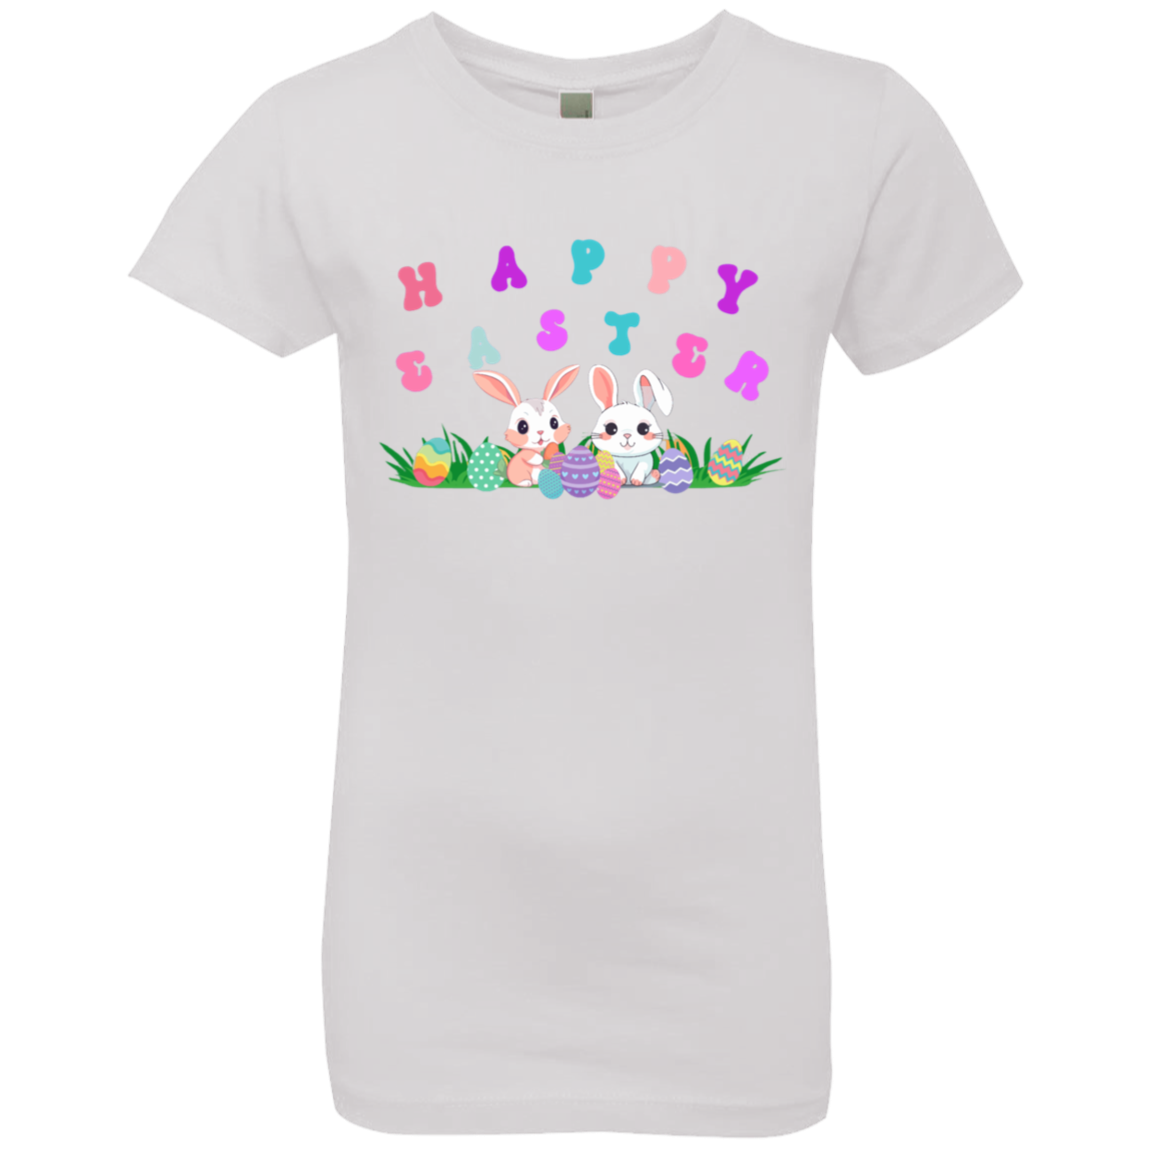 Women's Hap. Eas- Girls' Princess T-Shirt